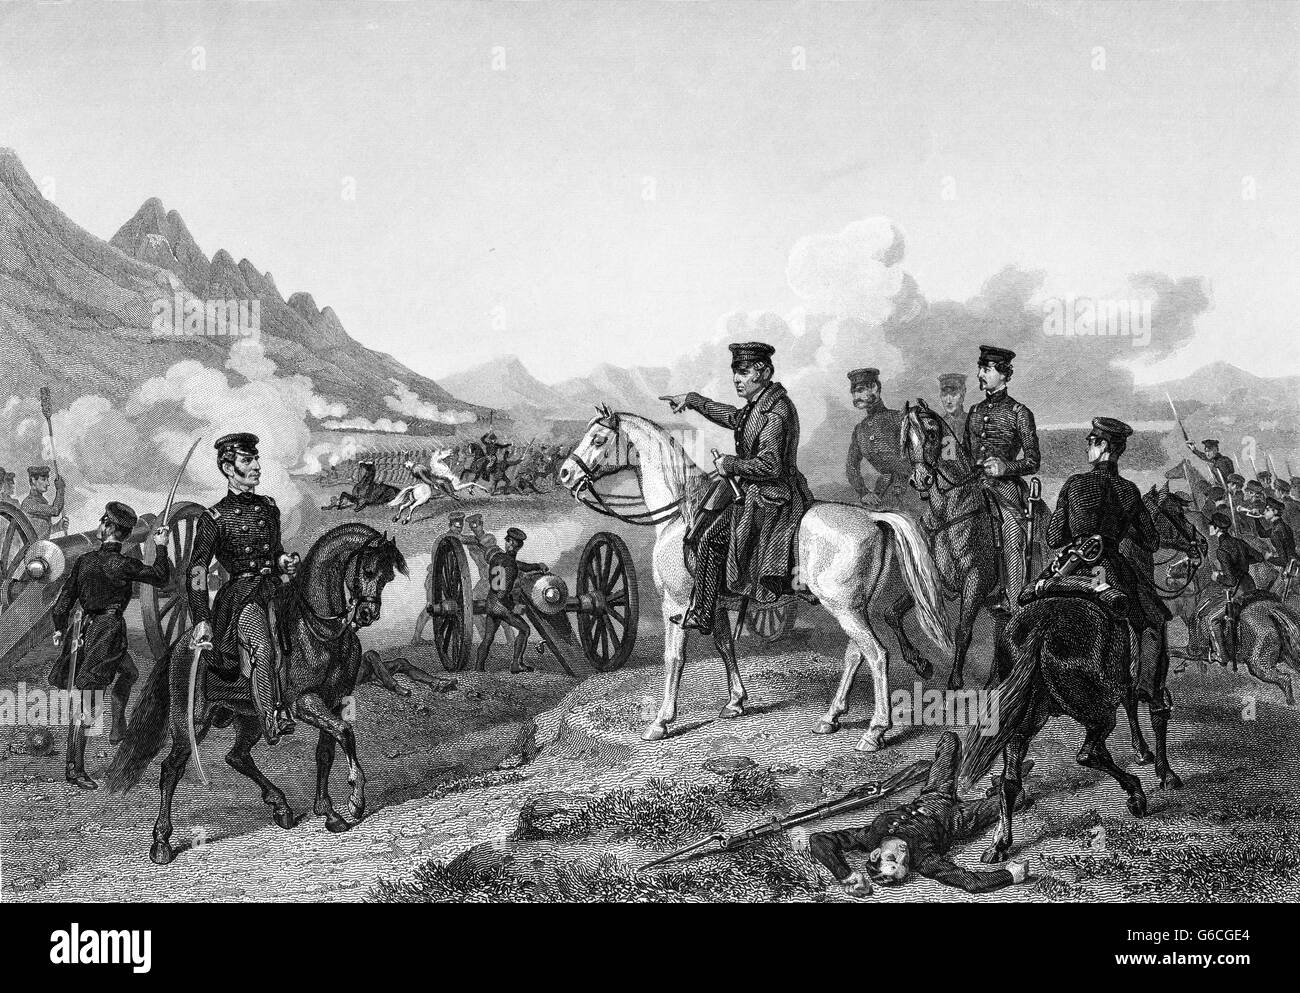 1840 février 1847 LE GÉNÉRAL ZACHARY TAYLOR MISE EN SCÈNE DE BATAILLE DES TROUPES DE BUENA VISTA AU COURS DE LA GUERRE D'AMÉRIQUE DU MEXIQUE Banque D'Images